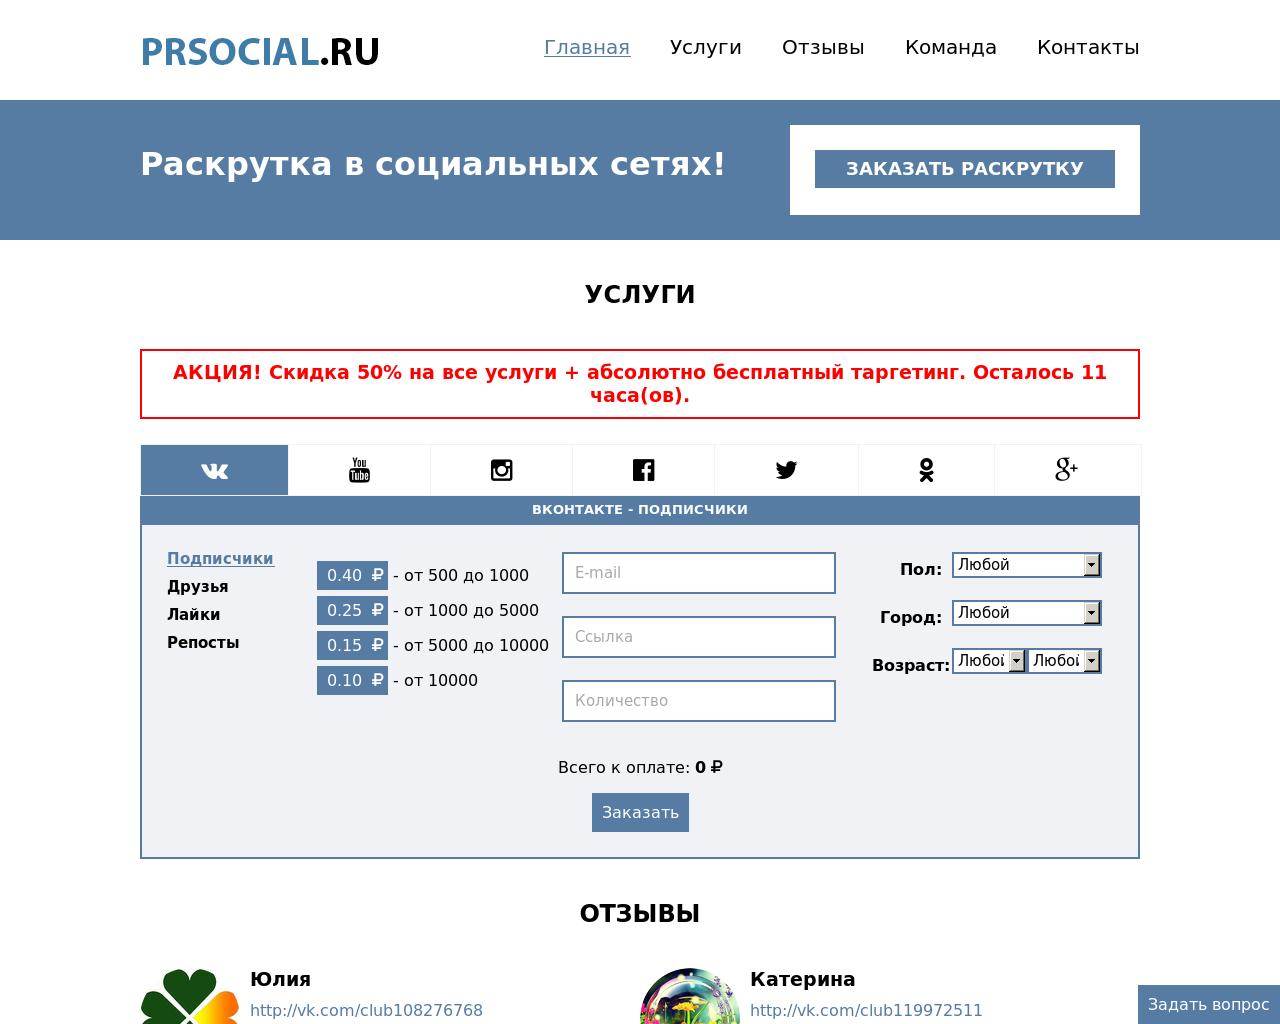 Изображение сайта prsocial.ru в разрешении 1280x1024